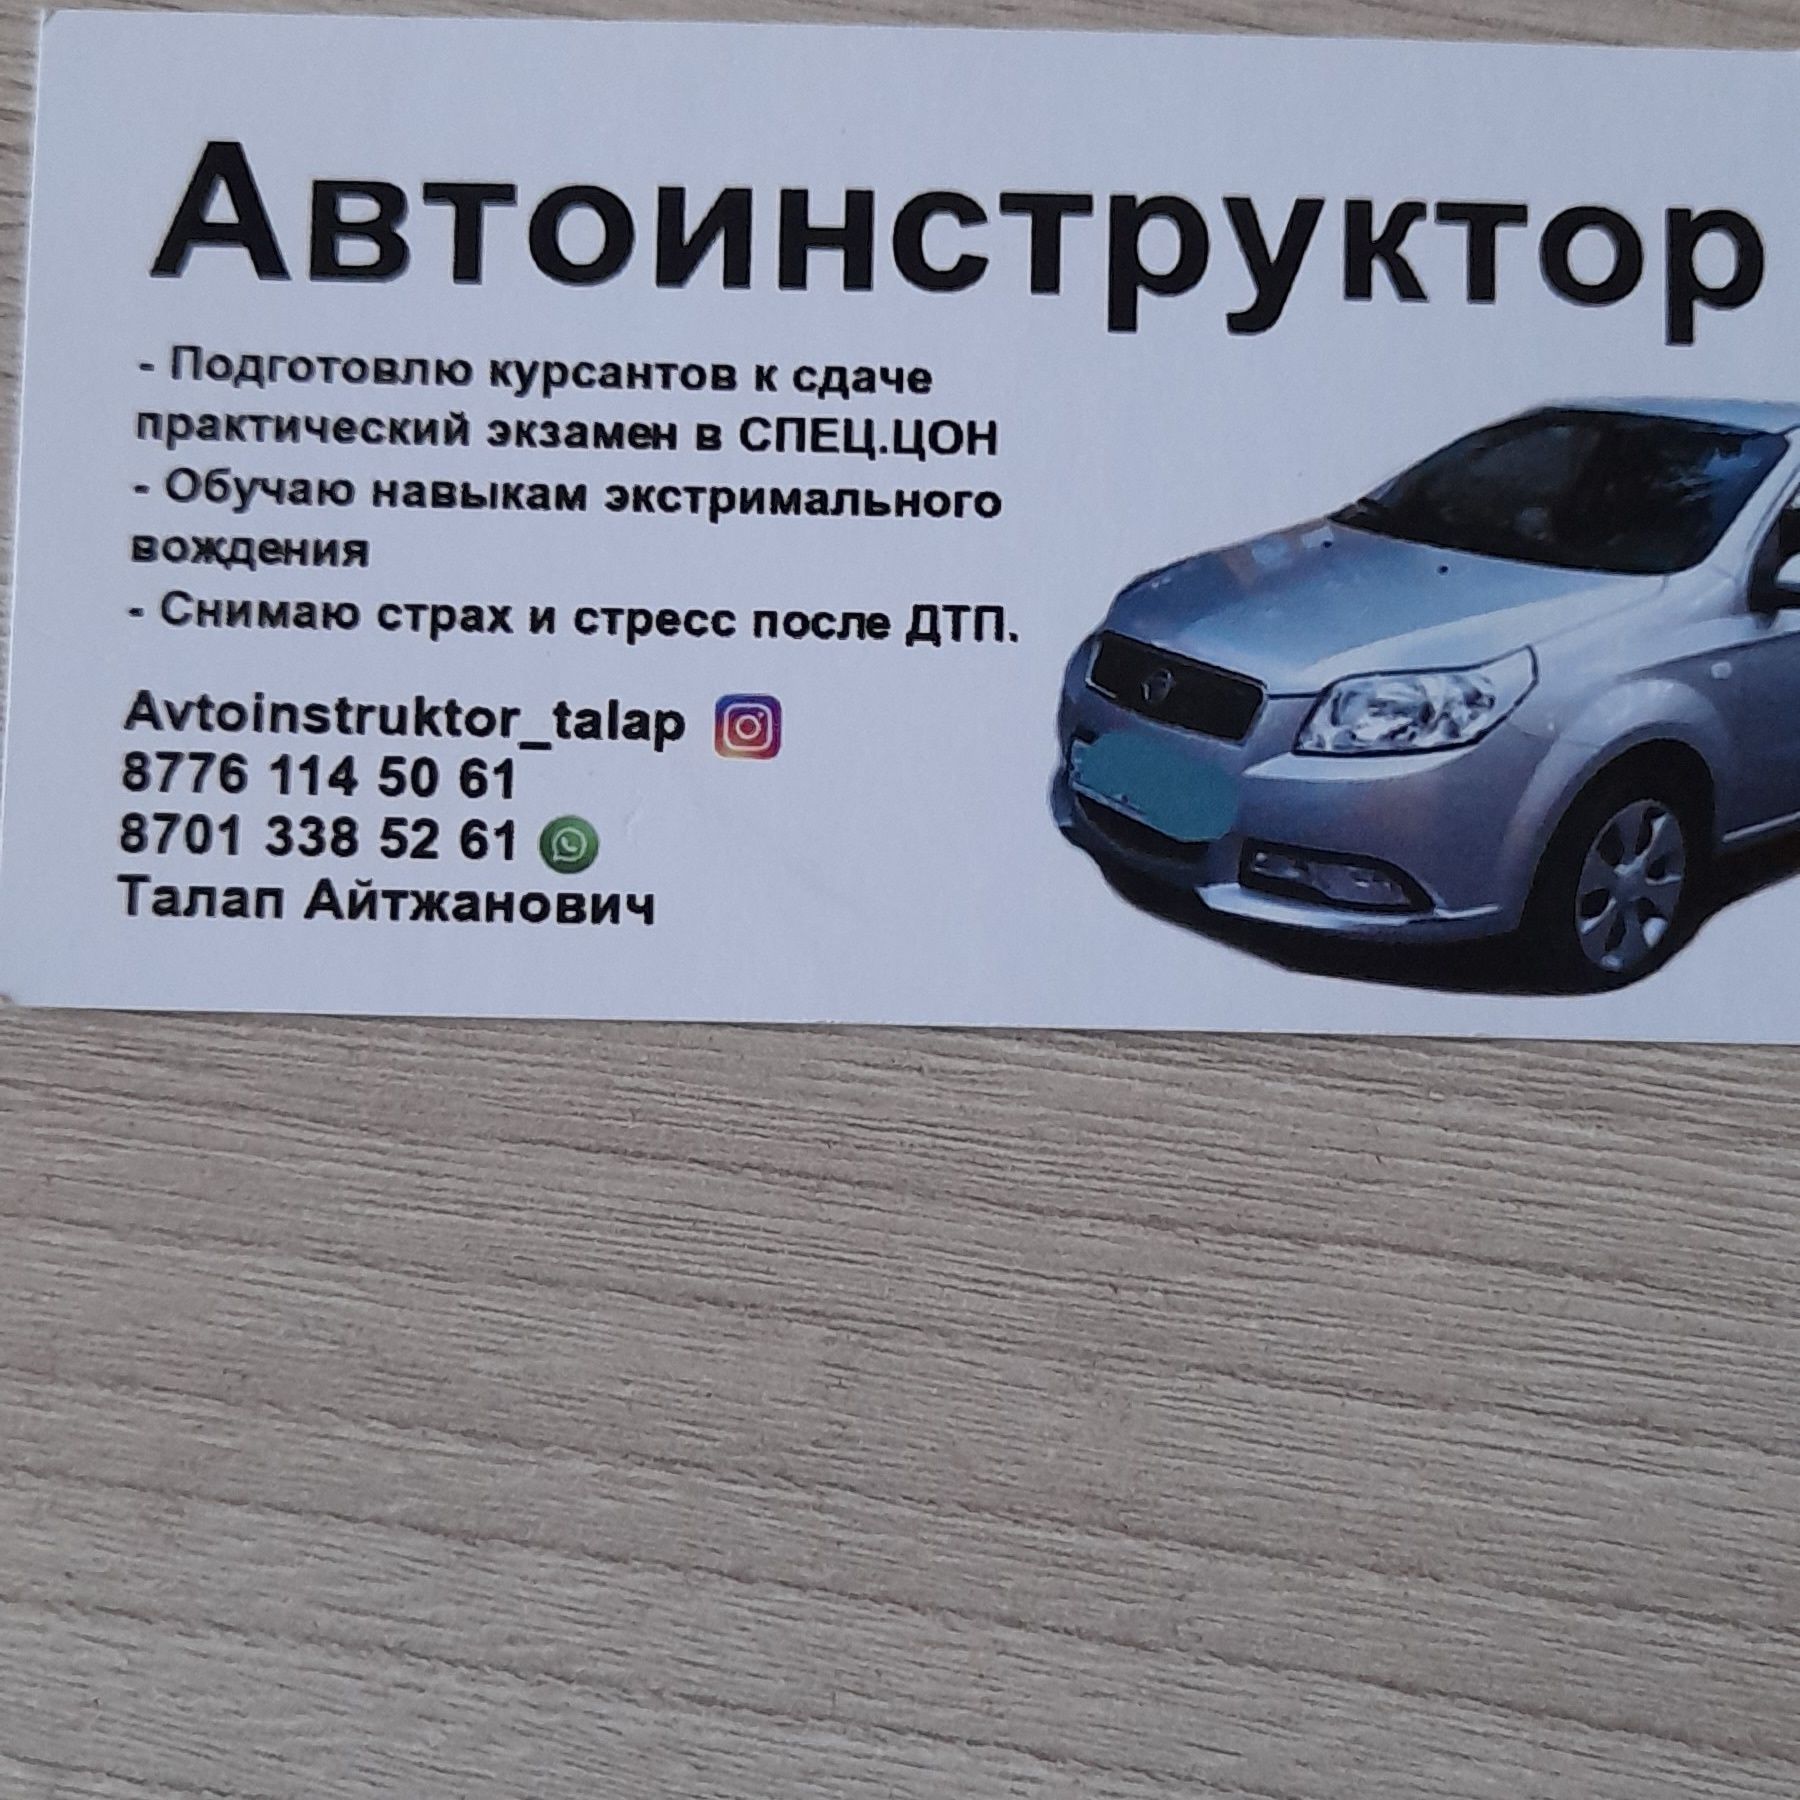 Автоинструктор/Автошкола. Астана.